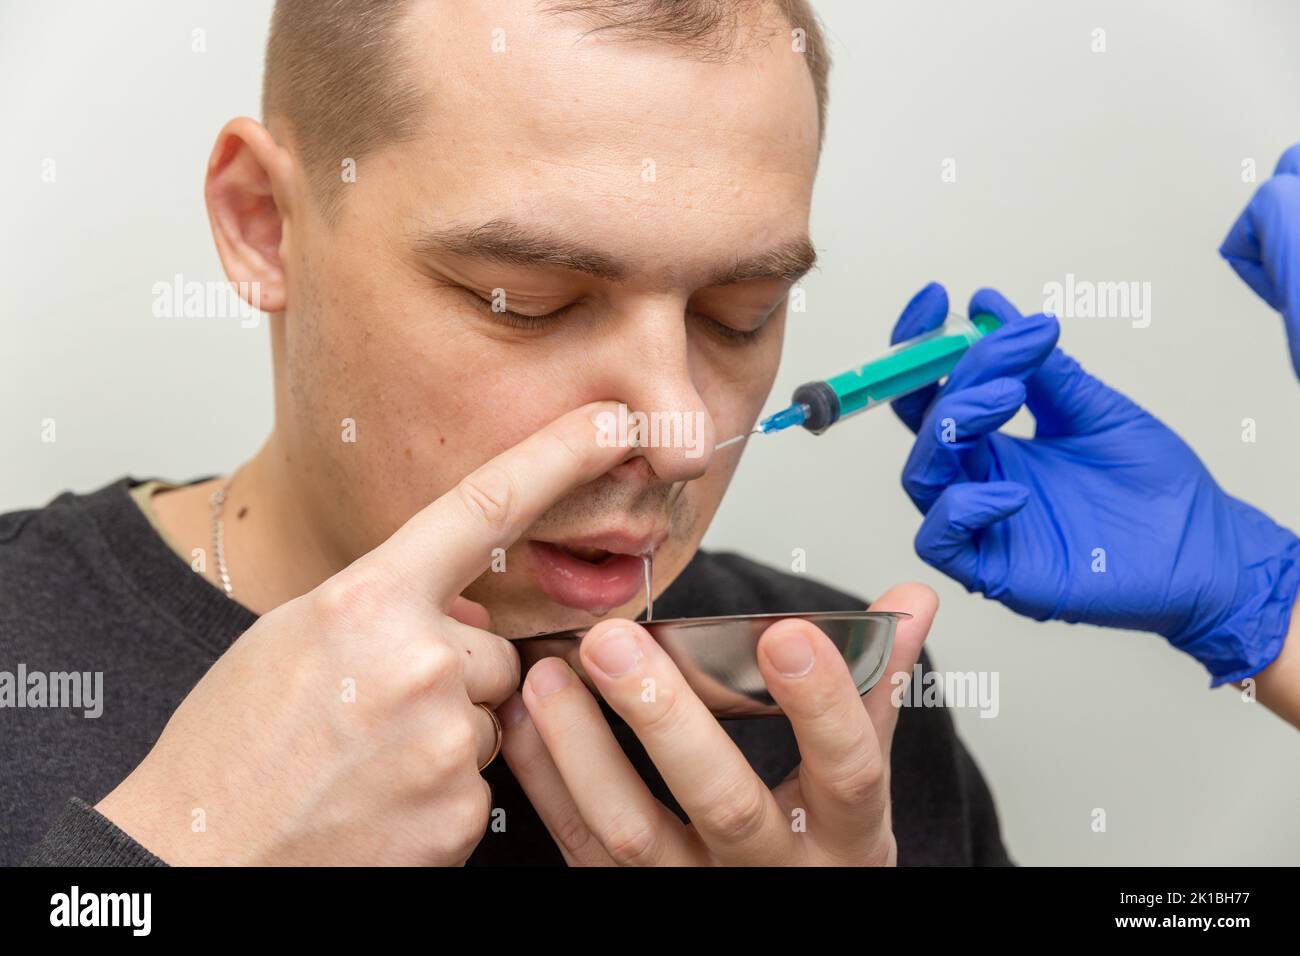 Une infirmière rince la cavité nasale d'un patient souffrant de sinusite avec une solution saline à l'aide d'une seringue. Banque D'Images